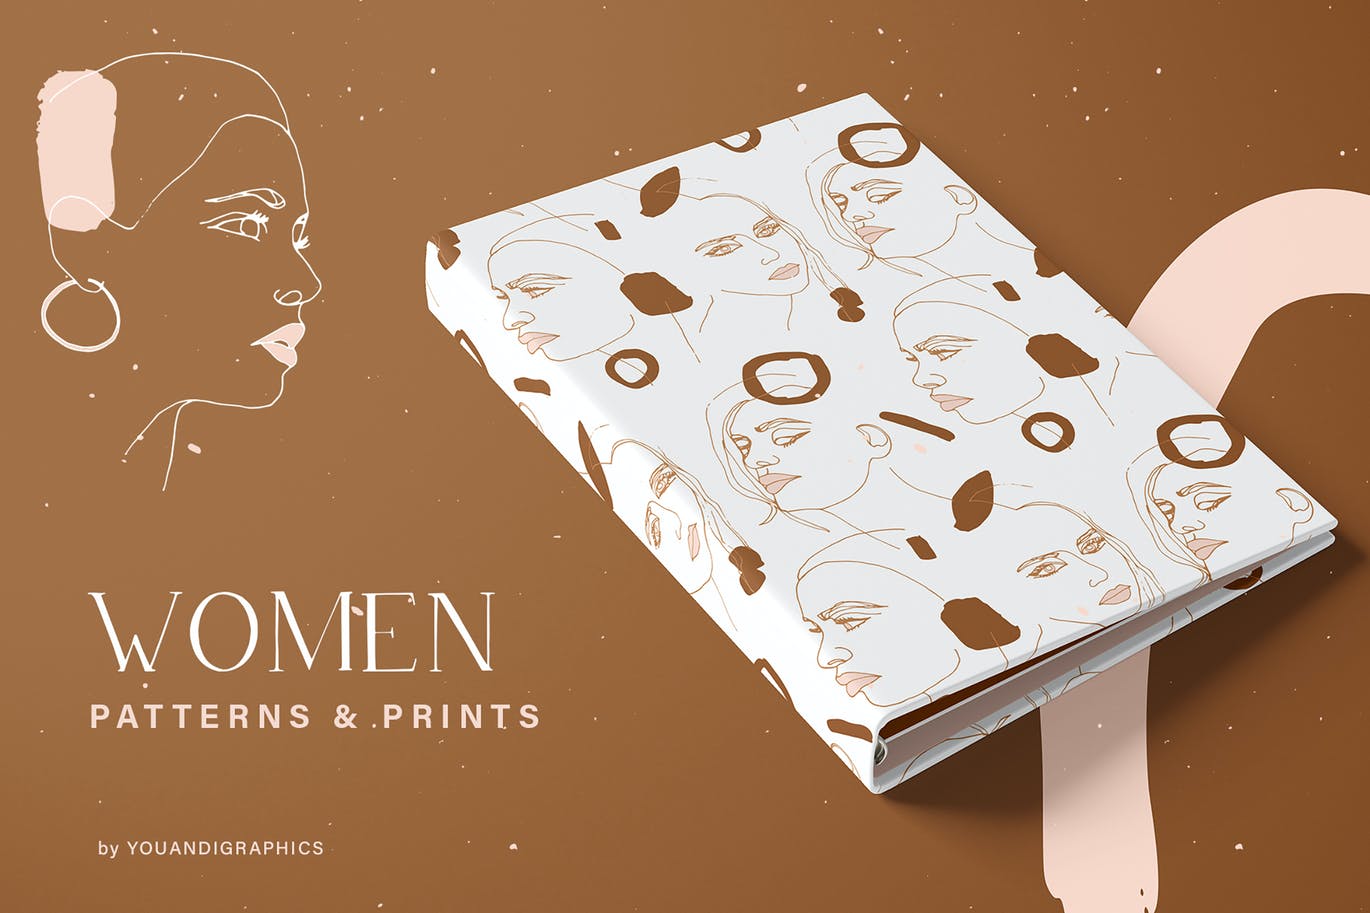 女性主题图案和插画集合 Women Patterns & Illustration Prints 图片素材 第1张